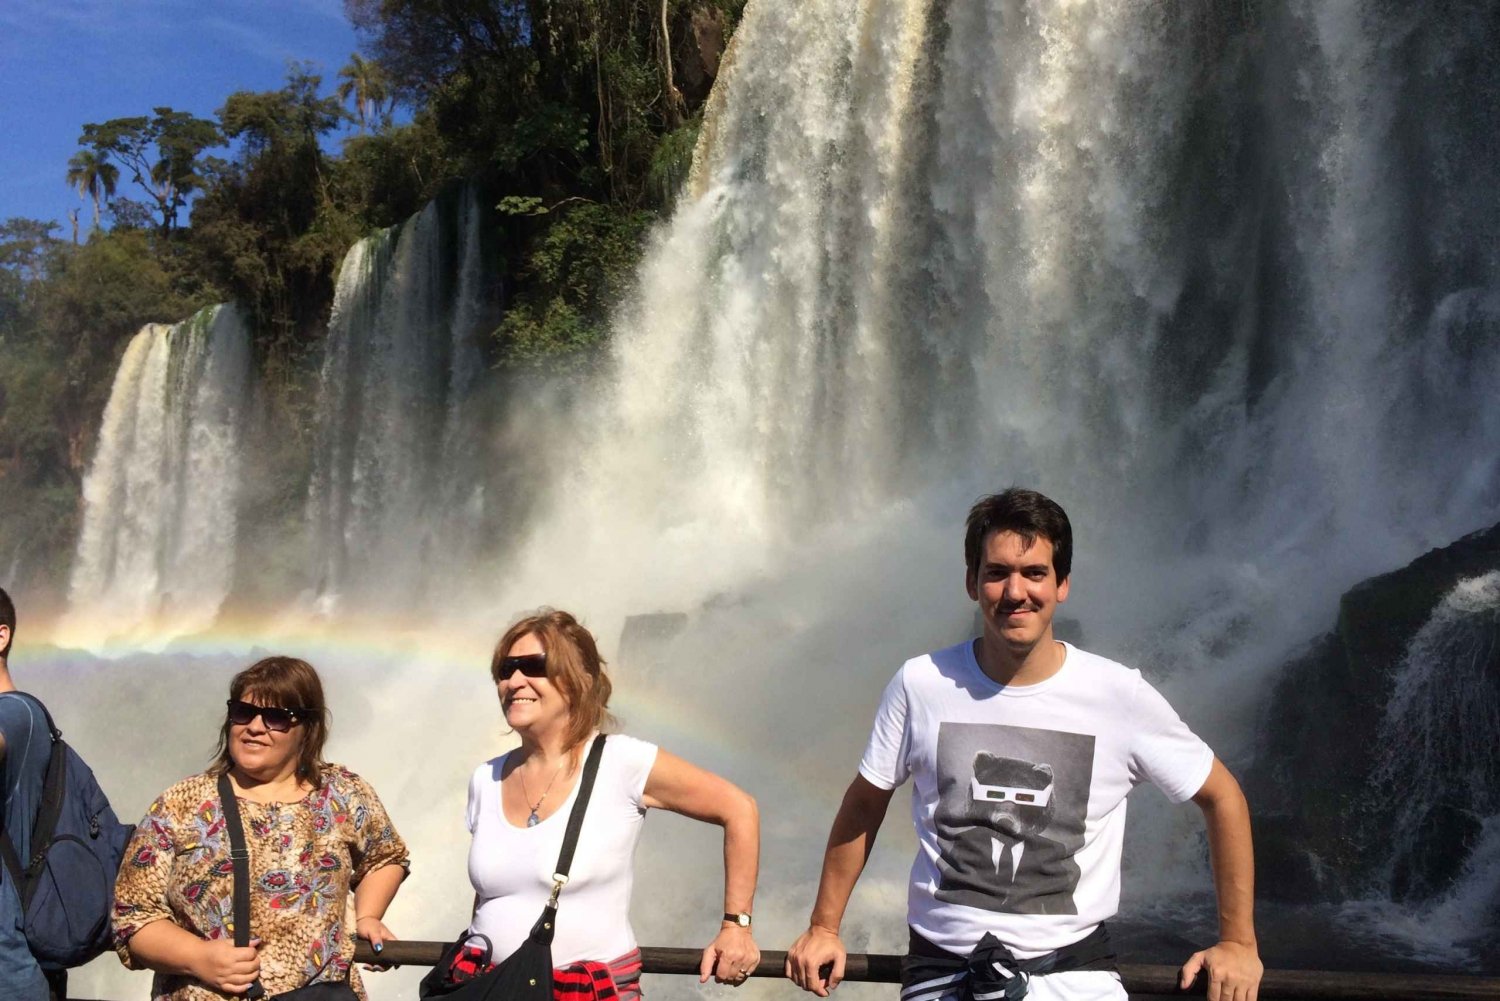 Dia inteiro nas Cataratas do Iguaçu em ambos os lados - Brasil e Argentina